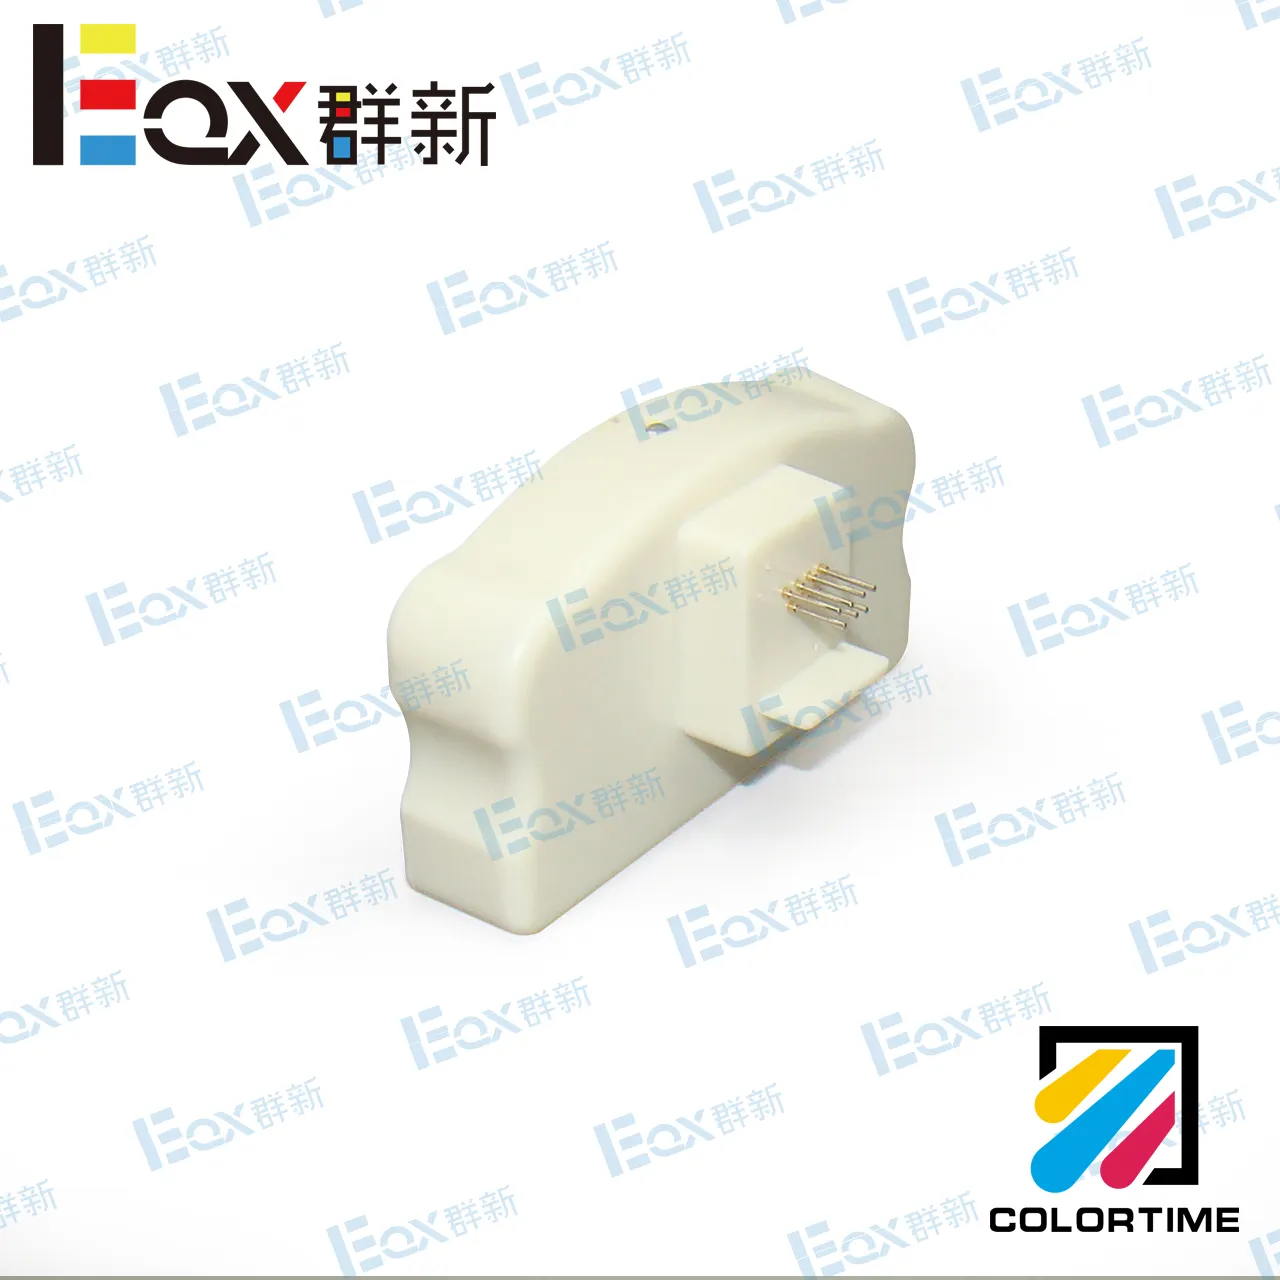 For Epson CW-C6500/C6000(Series)-C6000/6500 resetter 200 times cartridge chip resetter / maintank tank resetter solution